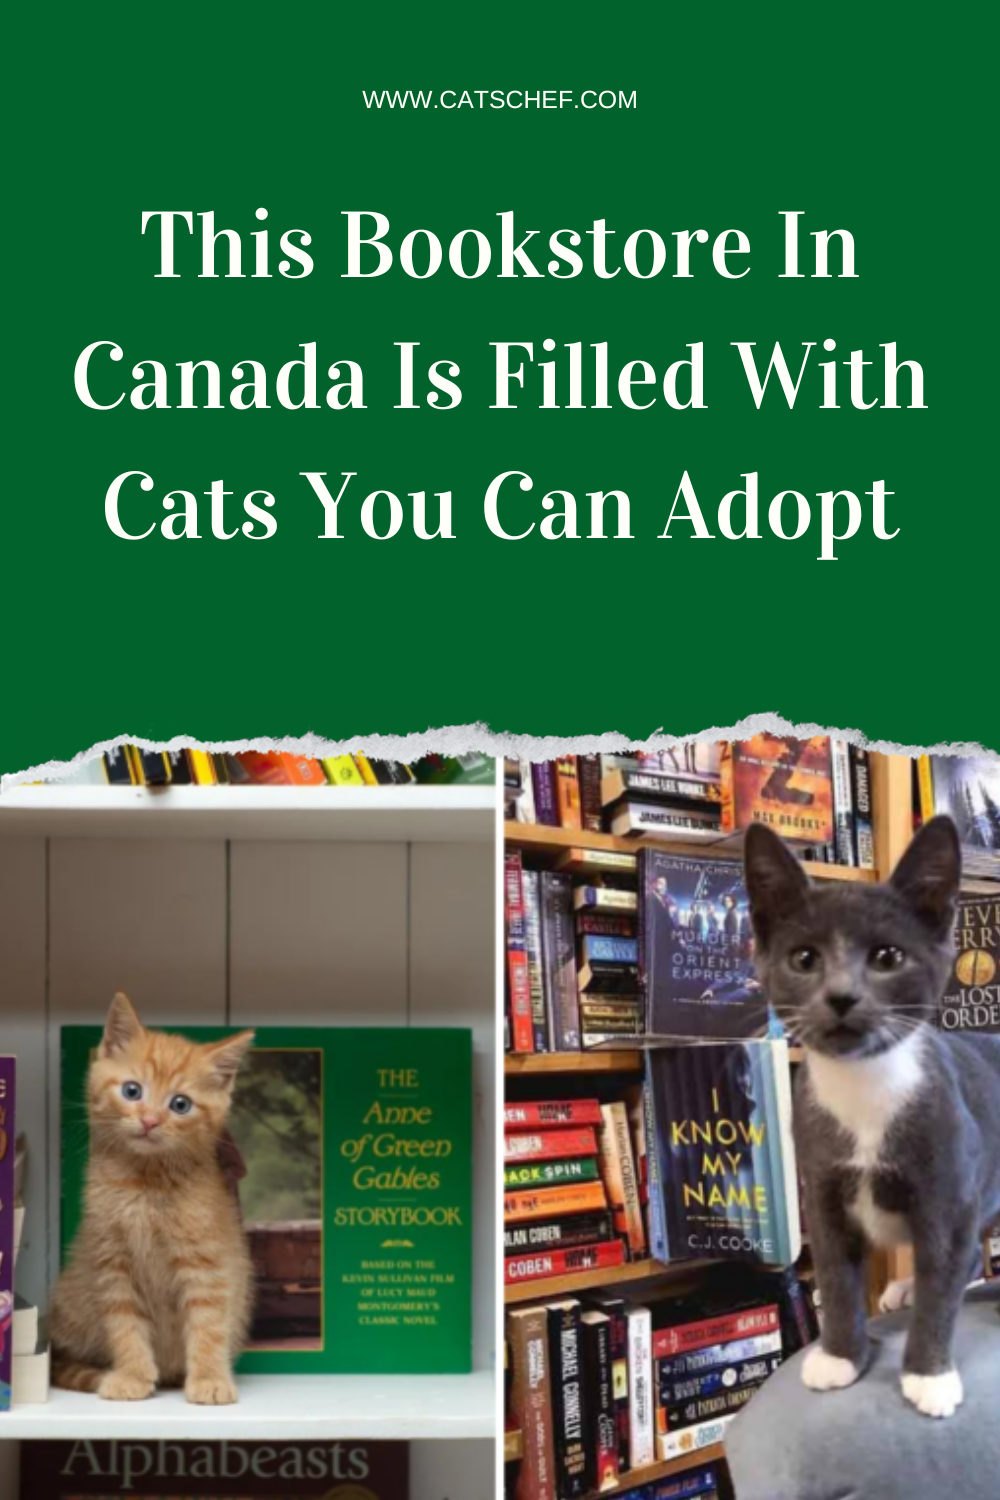 Kanada'daki Bu Kitapçı Evlat Edinebileceğiniz Kedilerle Dolu